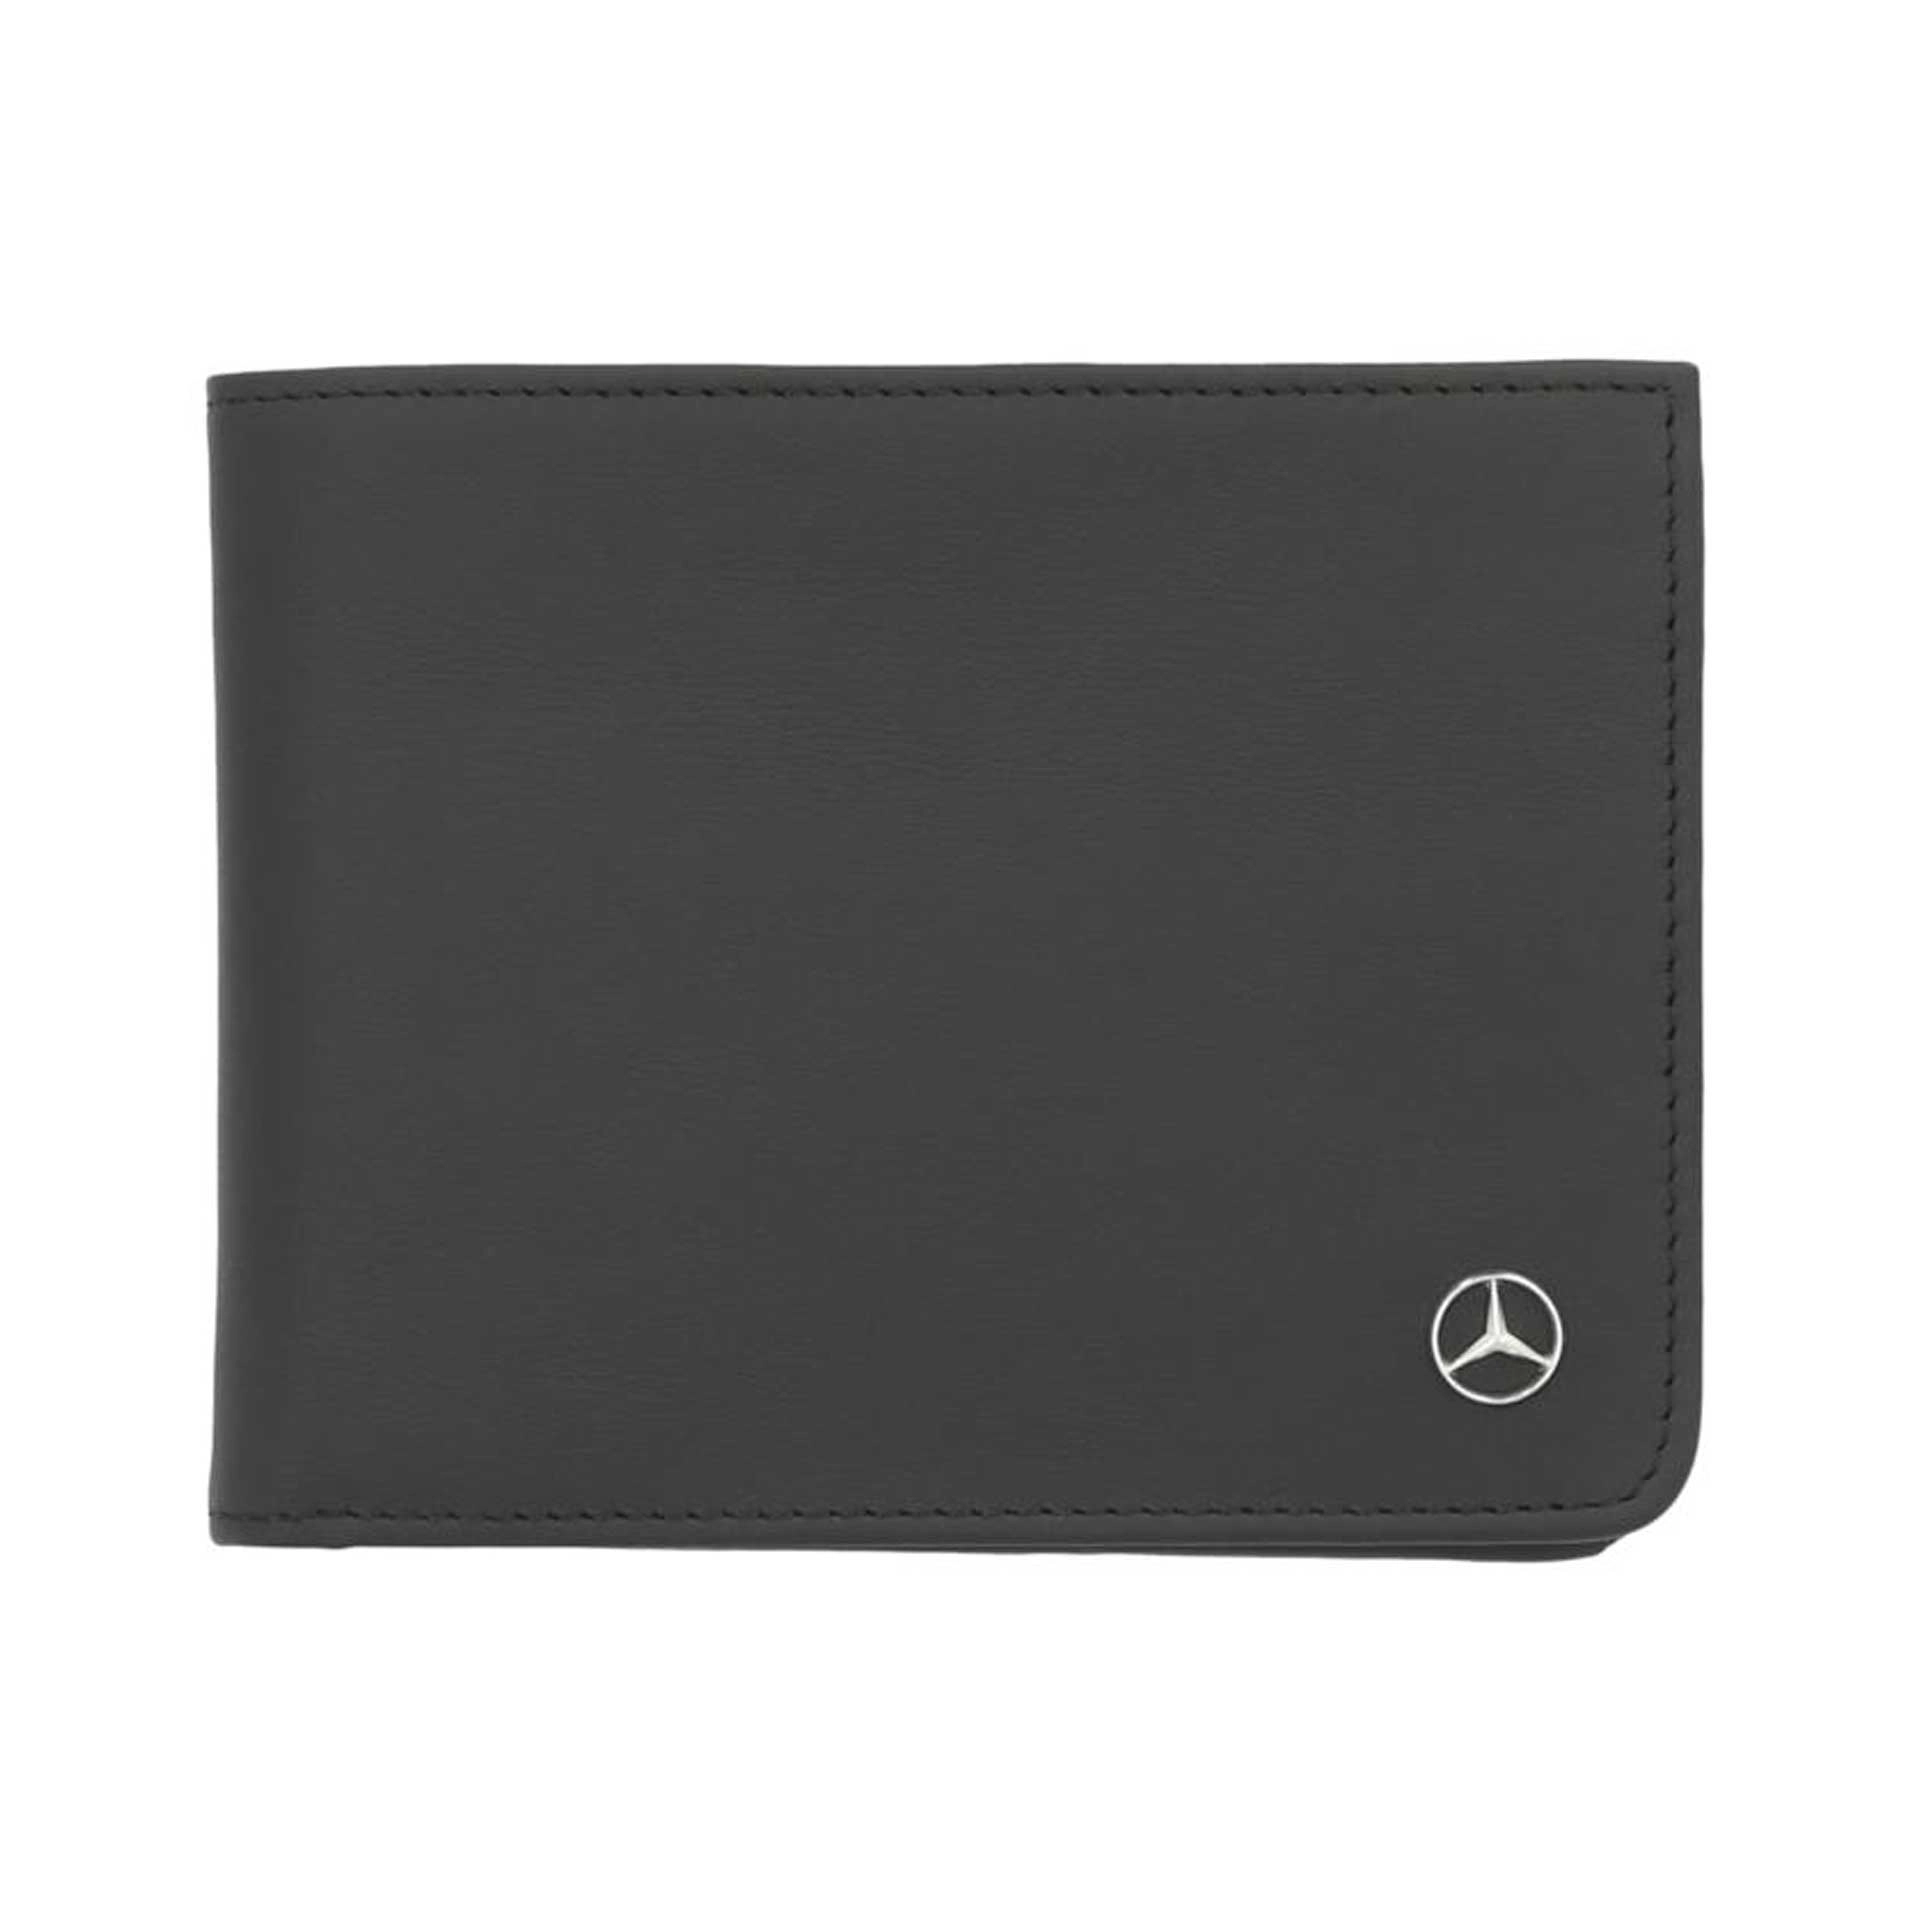 Mercedes-Benz Geldbörse schwarz aus Rindleder aus Fahrzeugproduktion B66959384